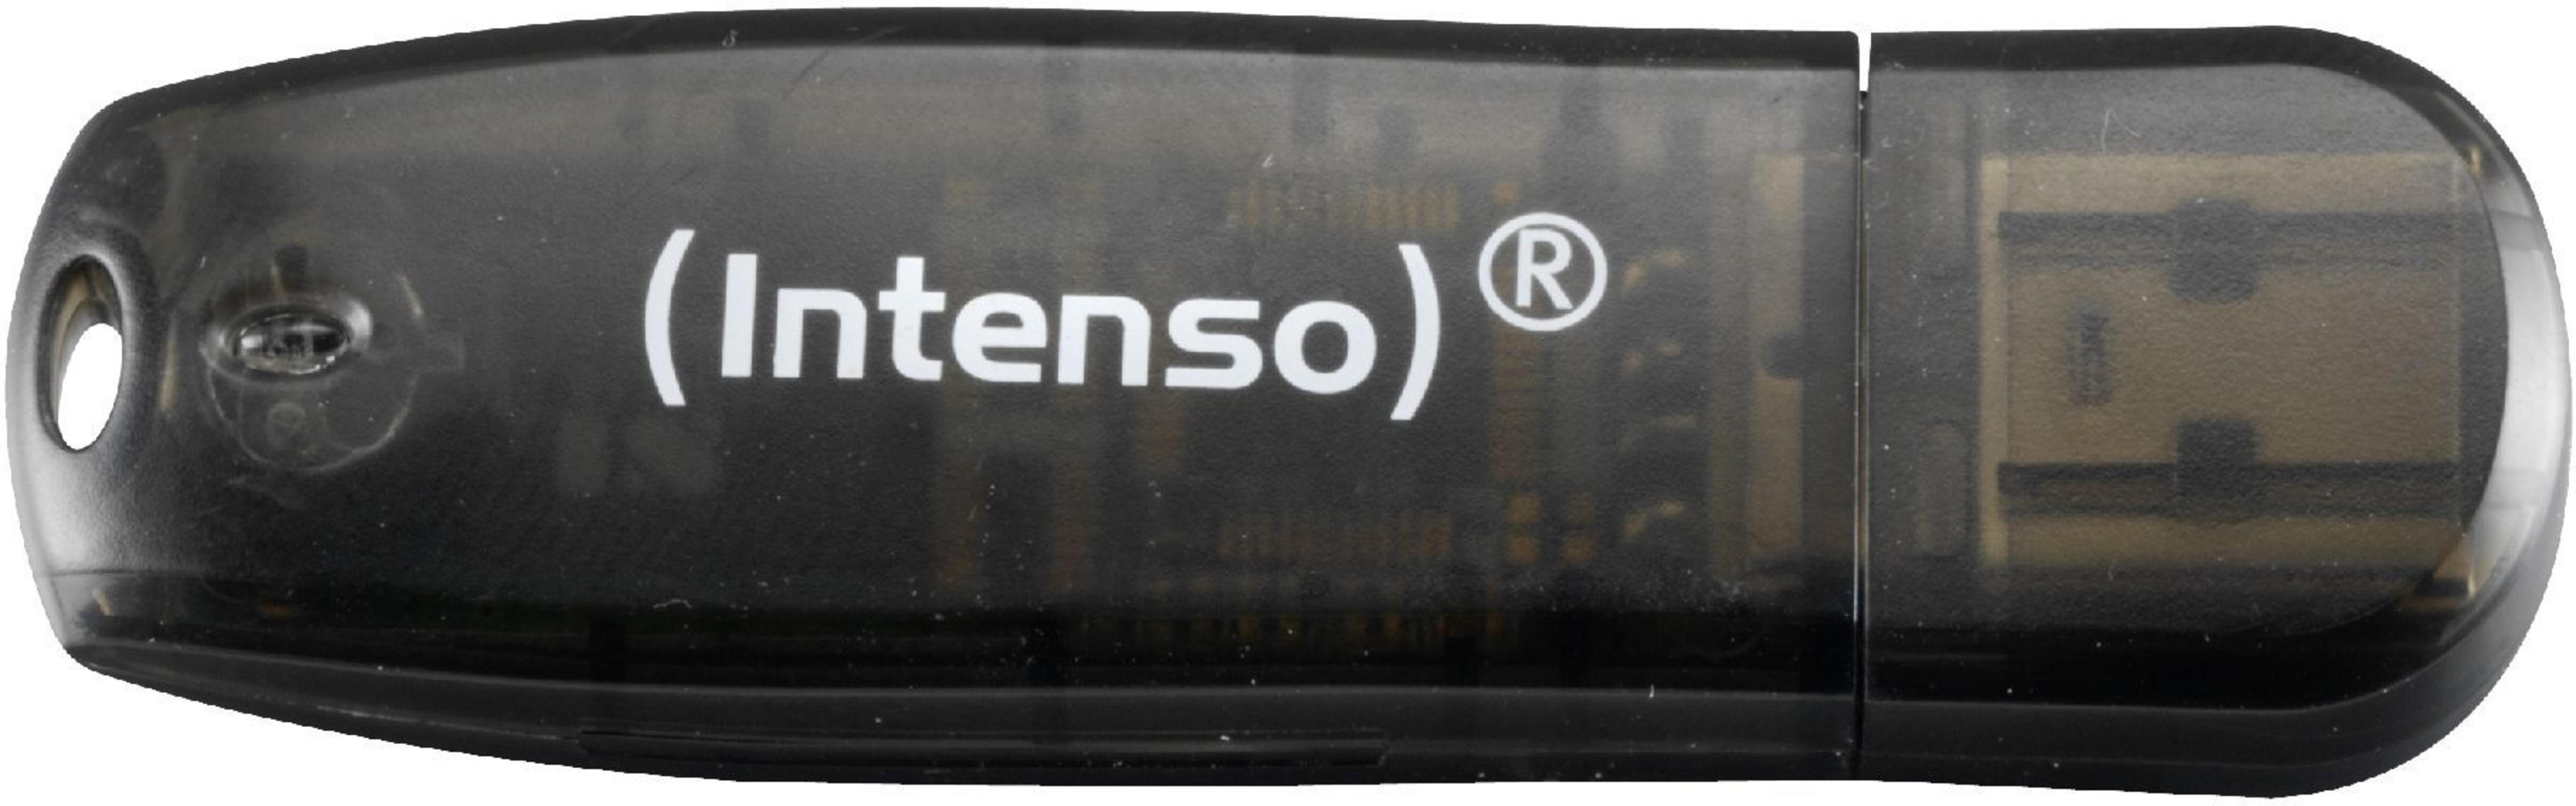 GB) RAINBOW 16 SCHWARZ 3502470 USB-Stick (Schwarz, INTENSO 16GB